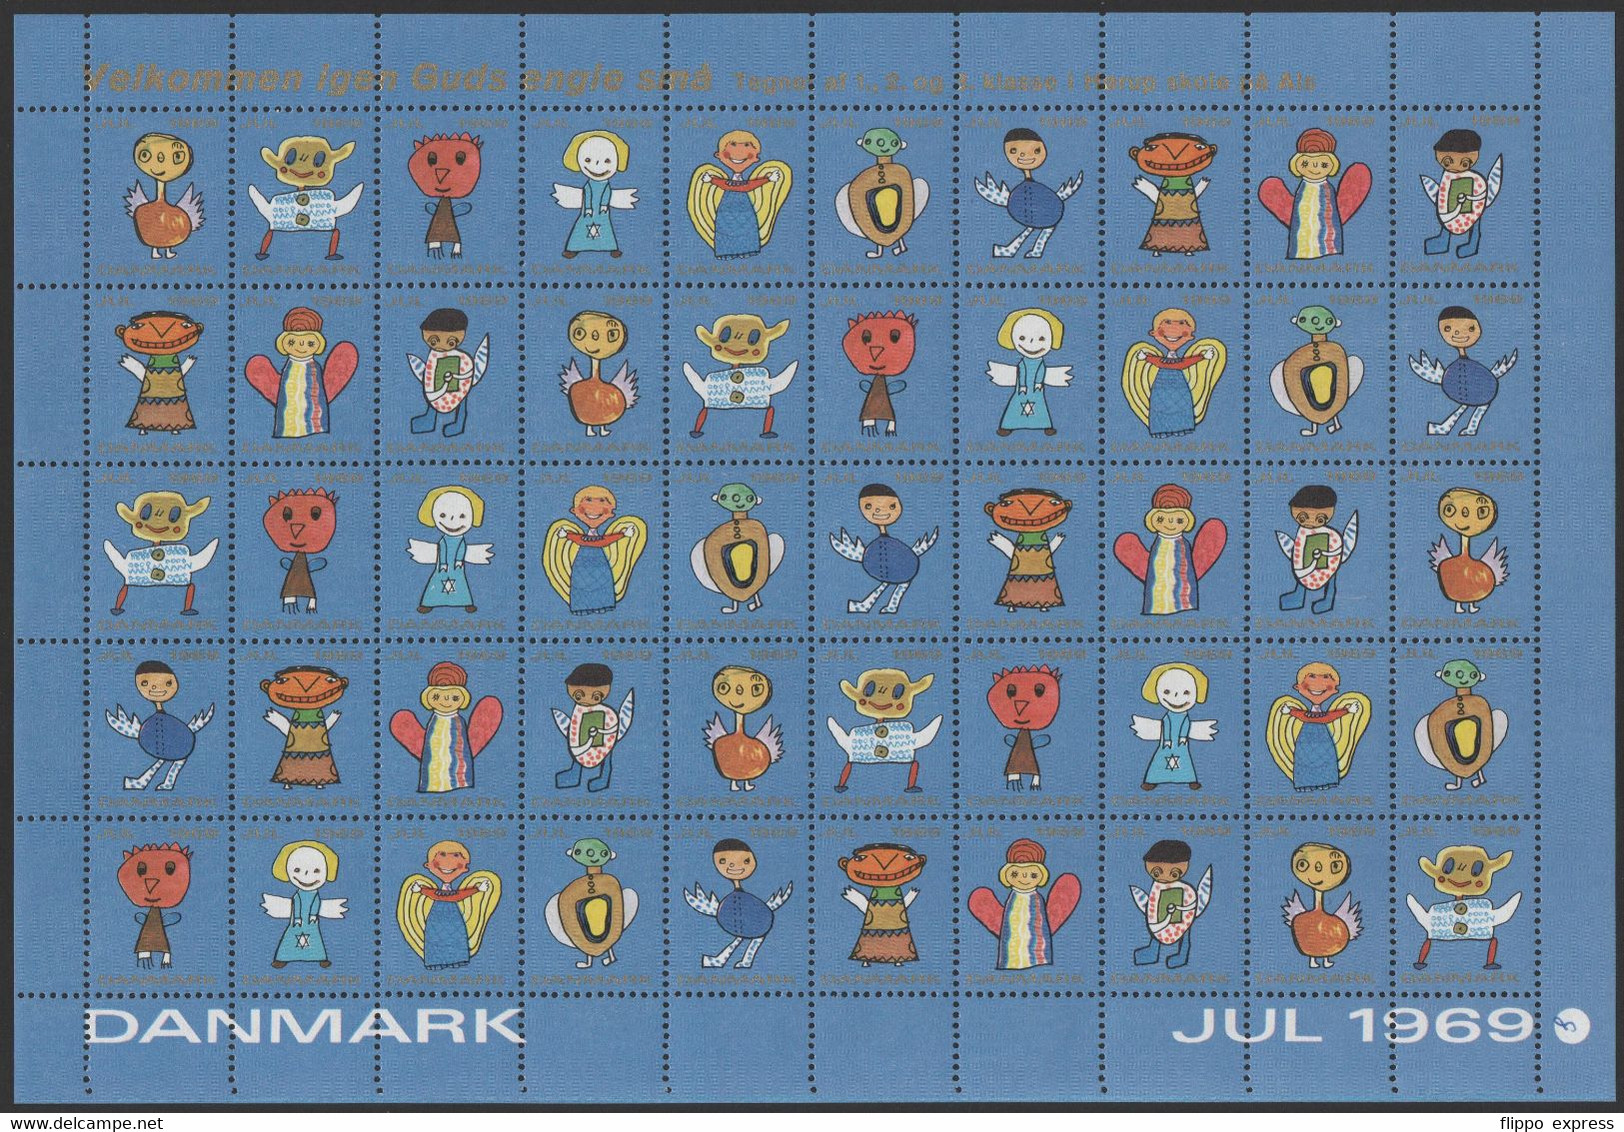 Denmark1969 Julemaerke, Mint Sheet Of 50 Stamps, Unfolded. - Hojas Completas